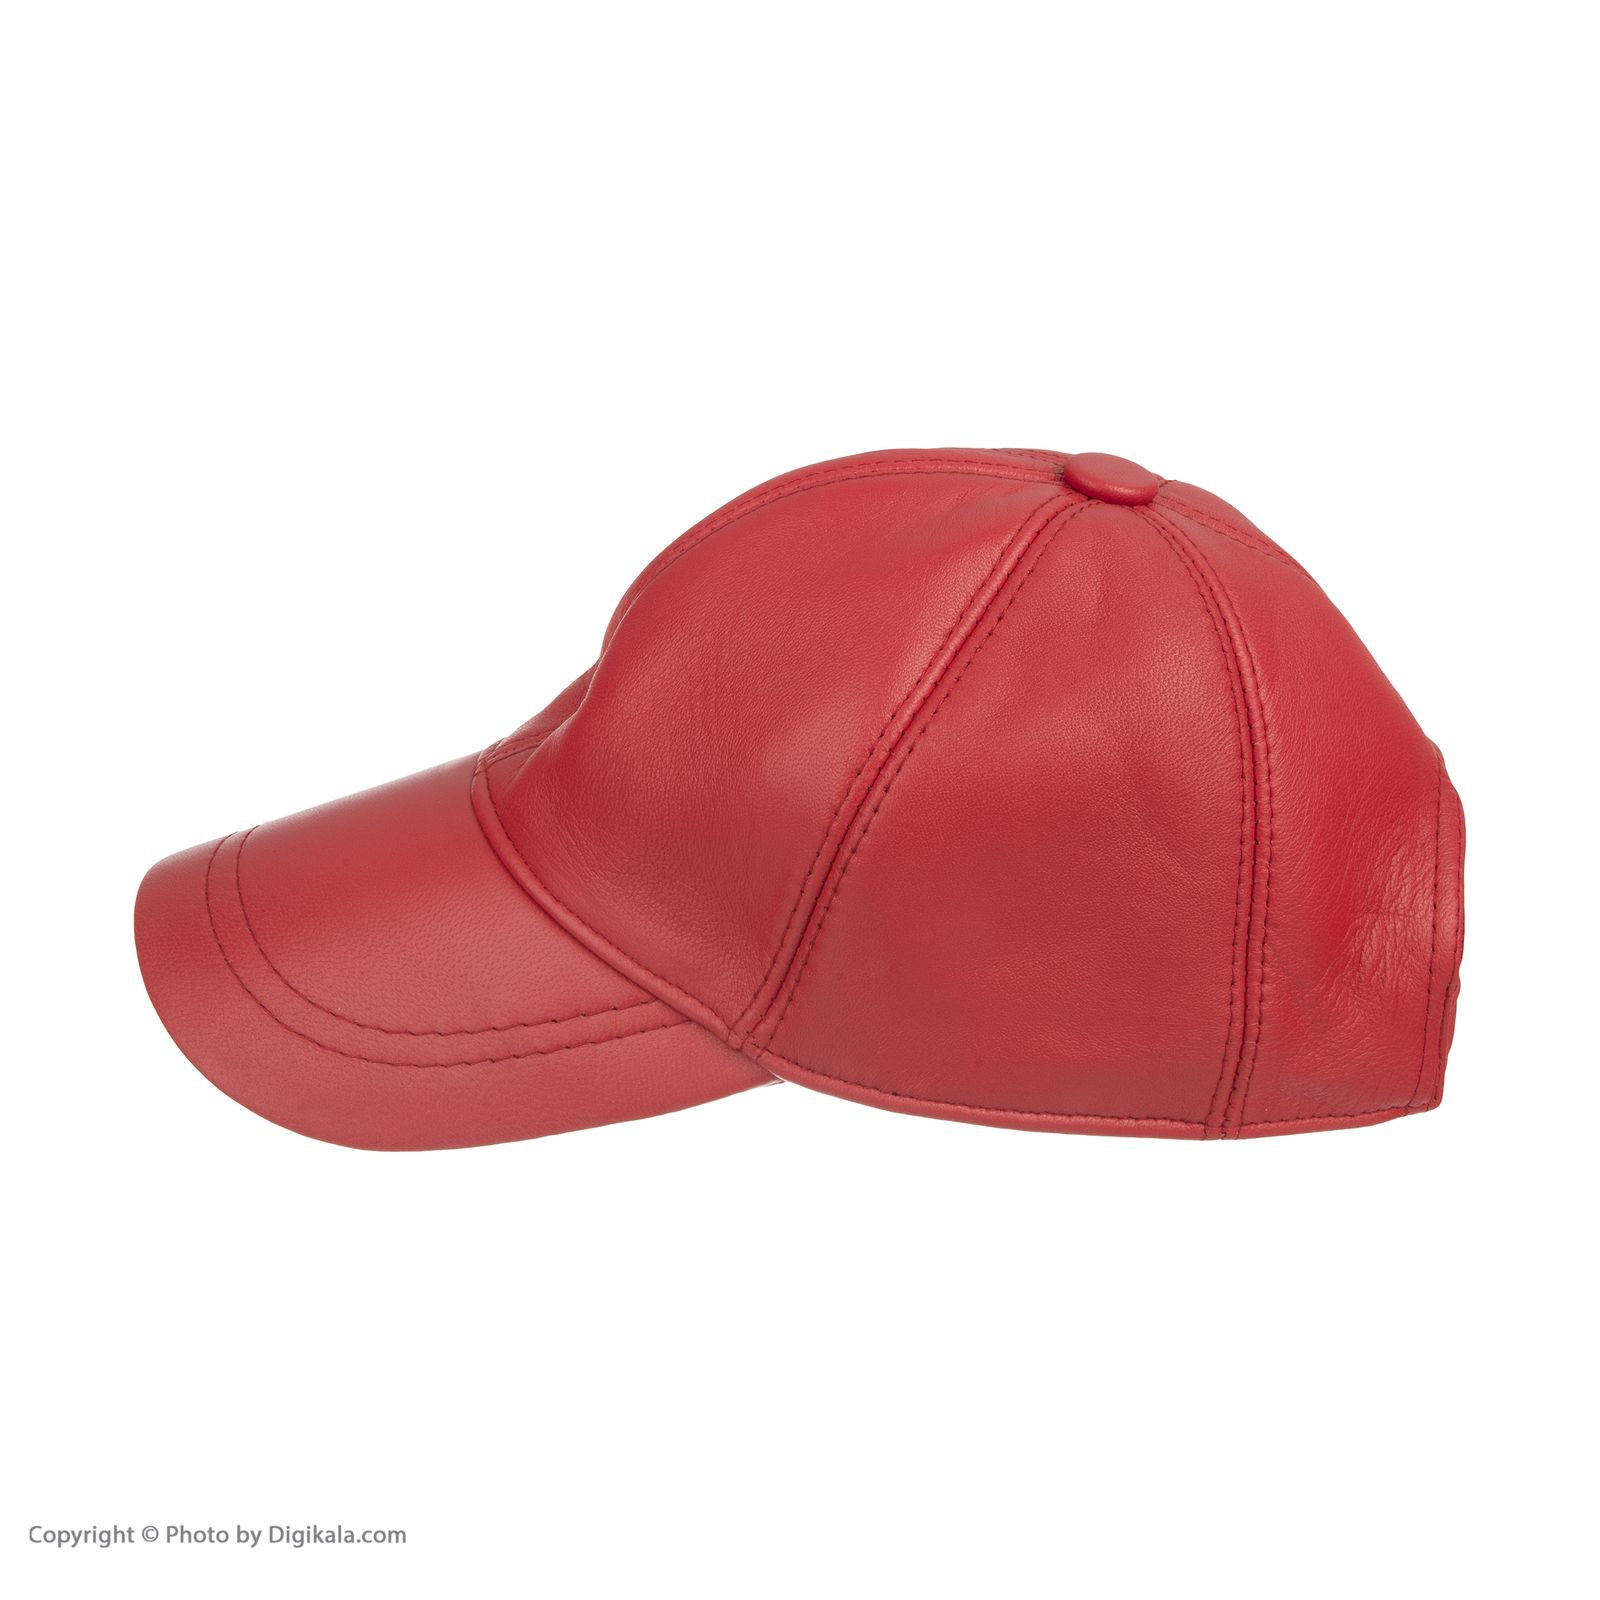 کلاه شیفر مدل 8701a09 - قرمز - 3